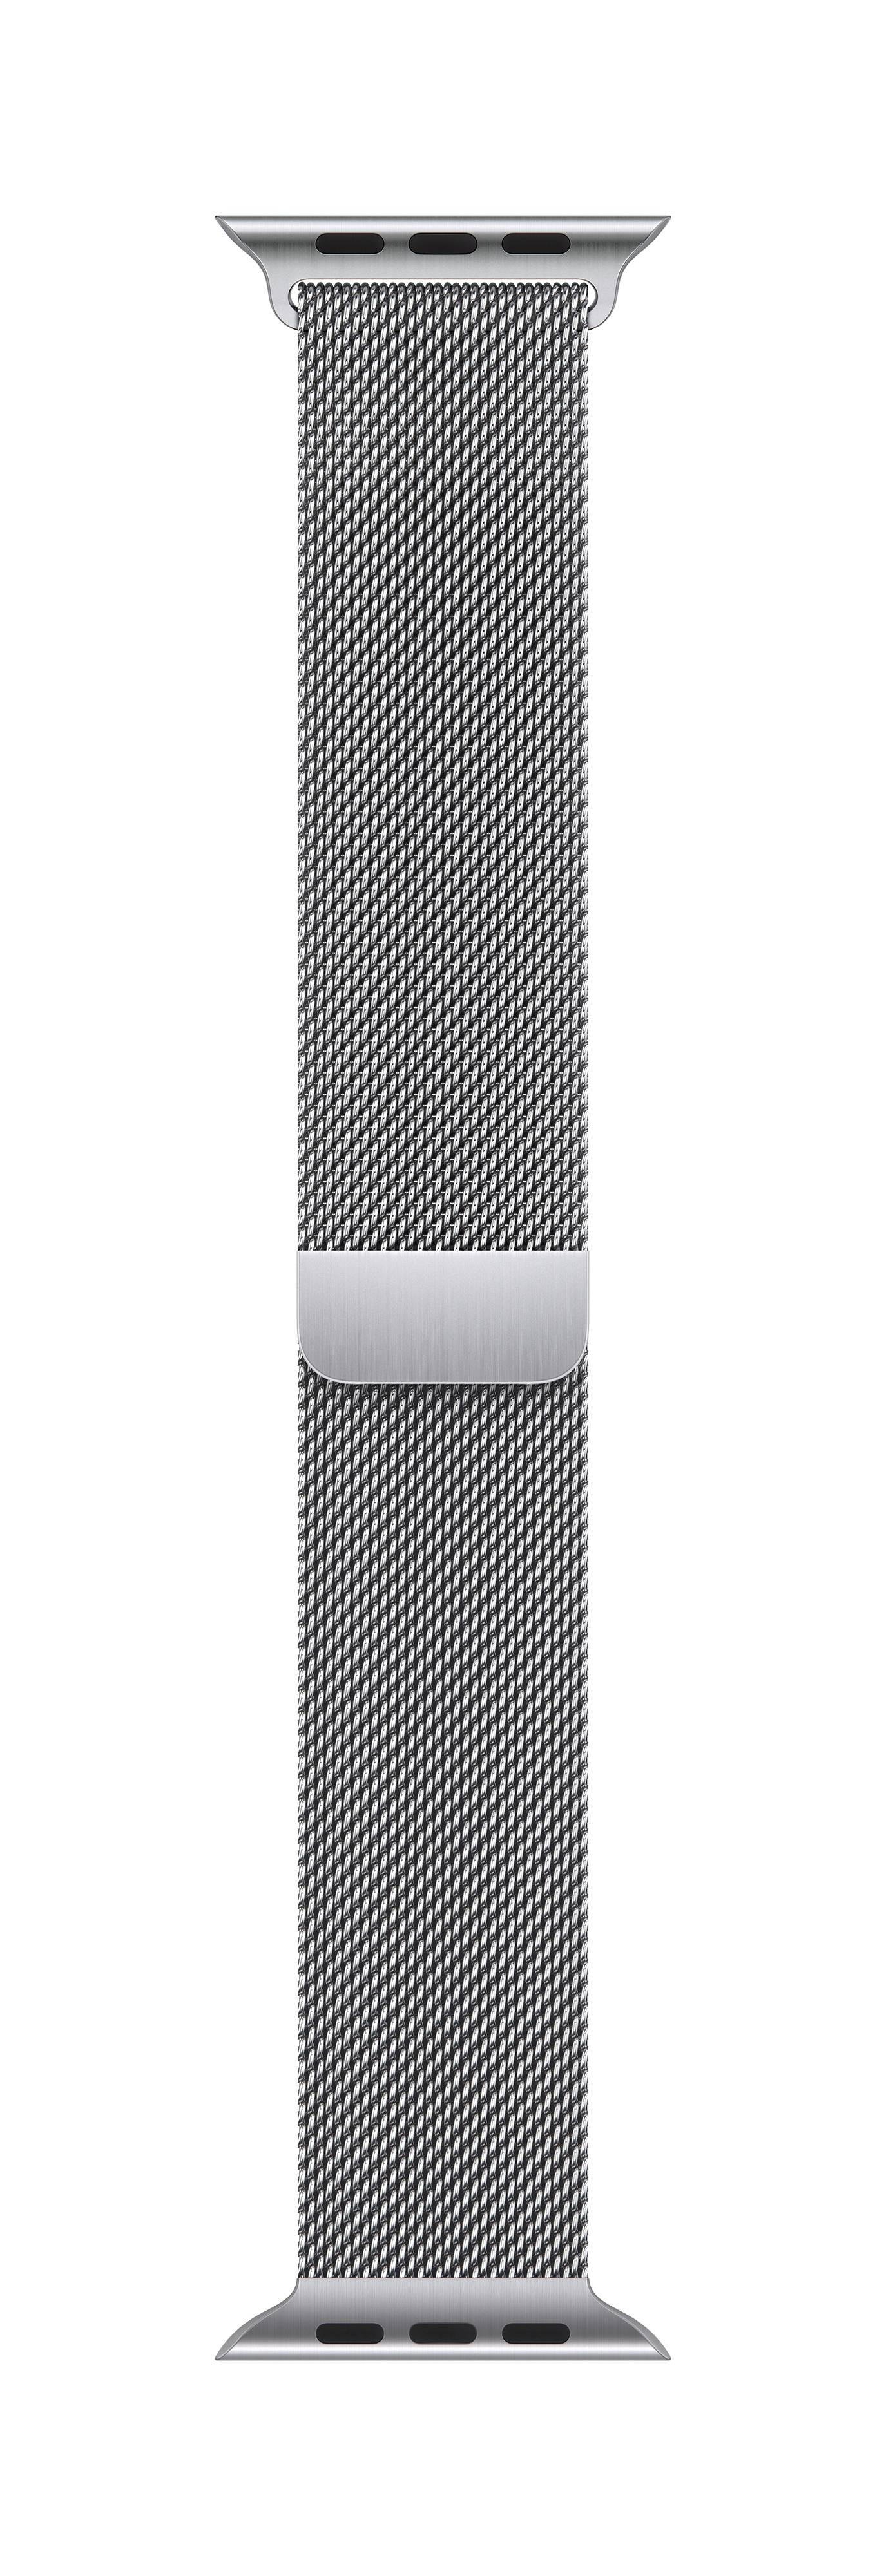 APPLE Milanaise Armband für Watch 41mm (silber)